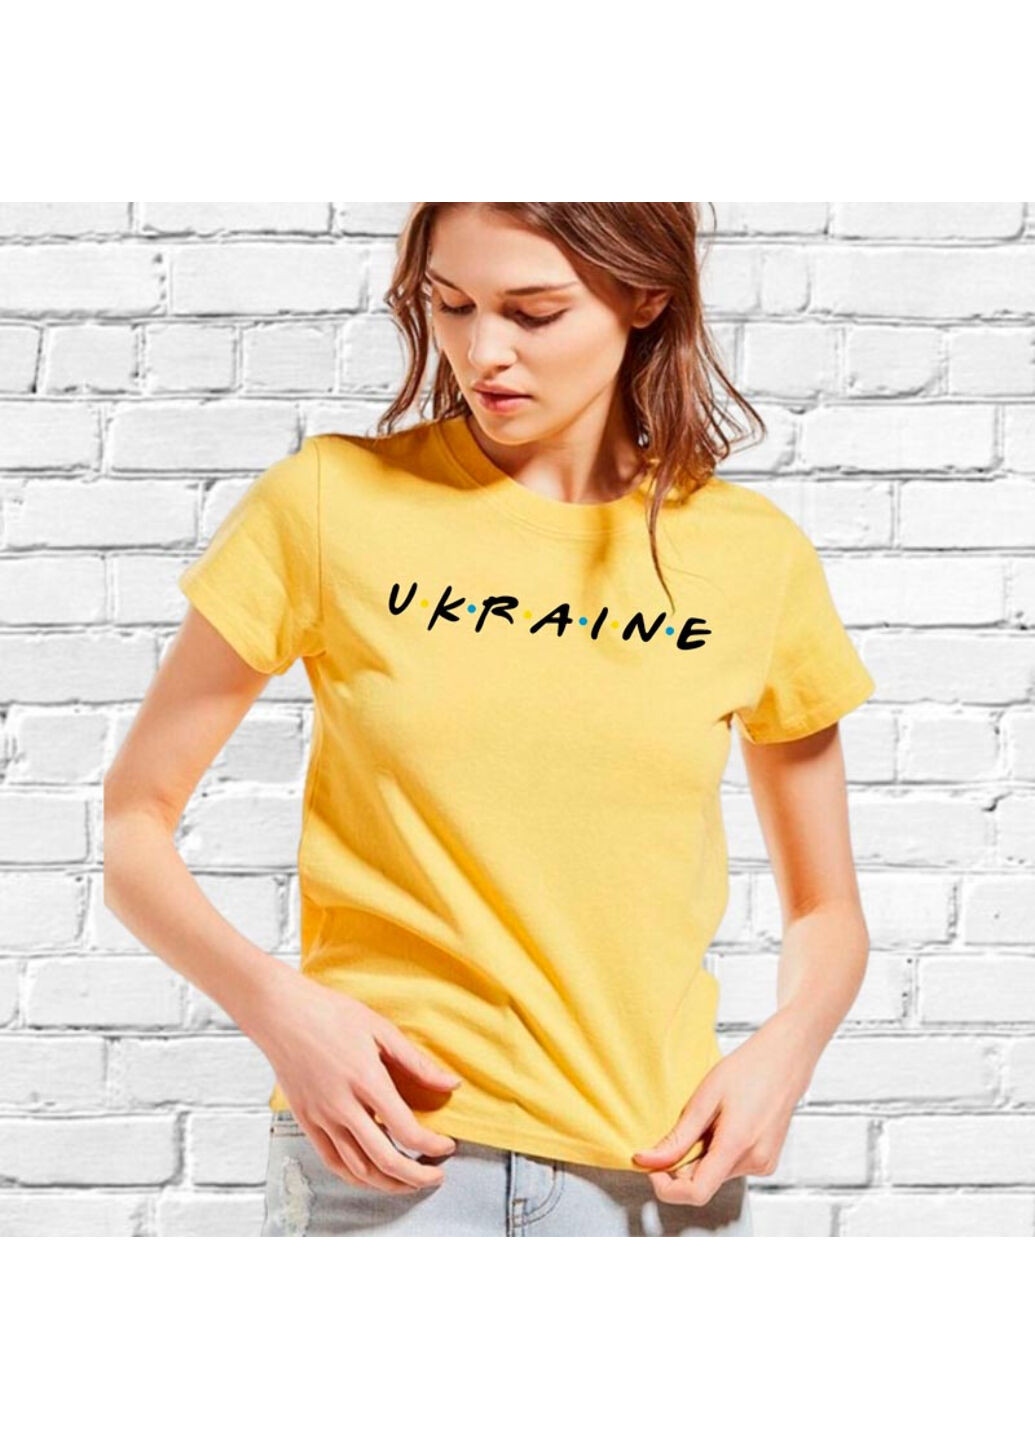 Желтая футболка женская желтая с вышивкой украина женская желтый m No Brand